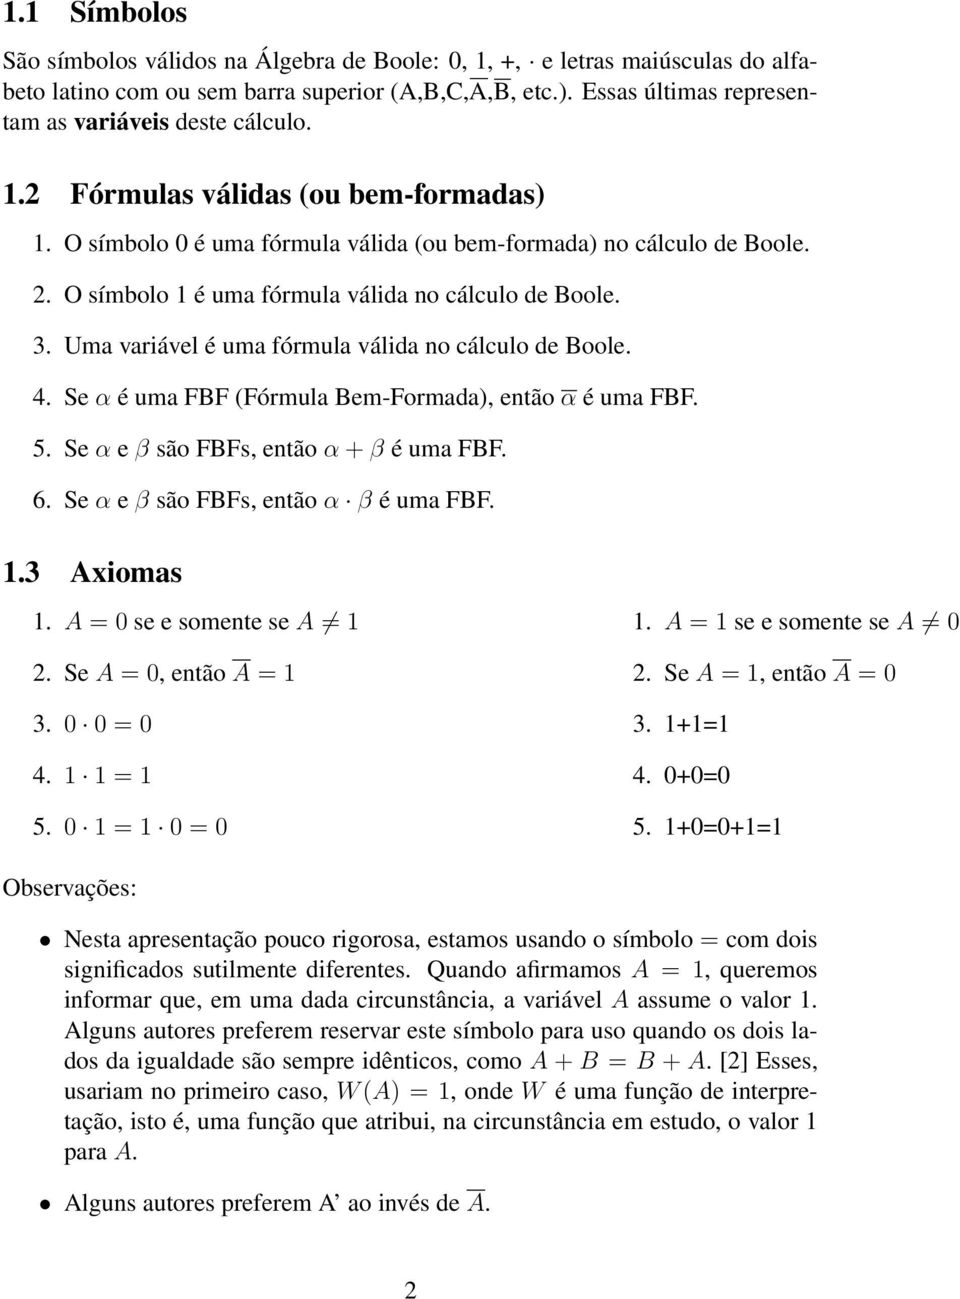 O símbolo 1 é uma fórmula válida no cálculo de Boole. 3. Uma variável é uma fórmula válida no cálculo de Boole. 4. Se α é uma FBF (Fórmula Bem-Formada), então α é uma FBF. 5.